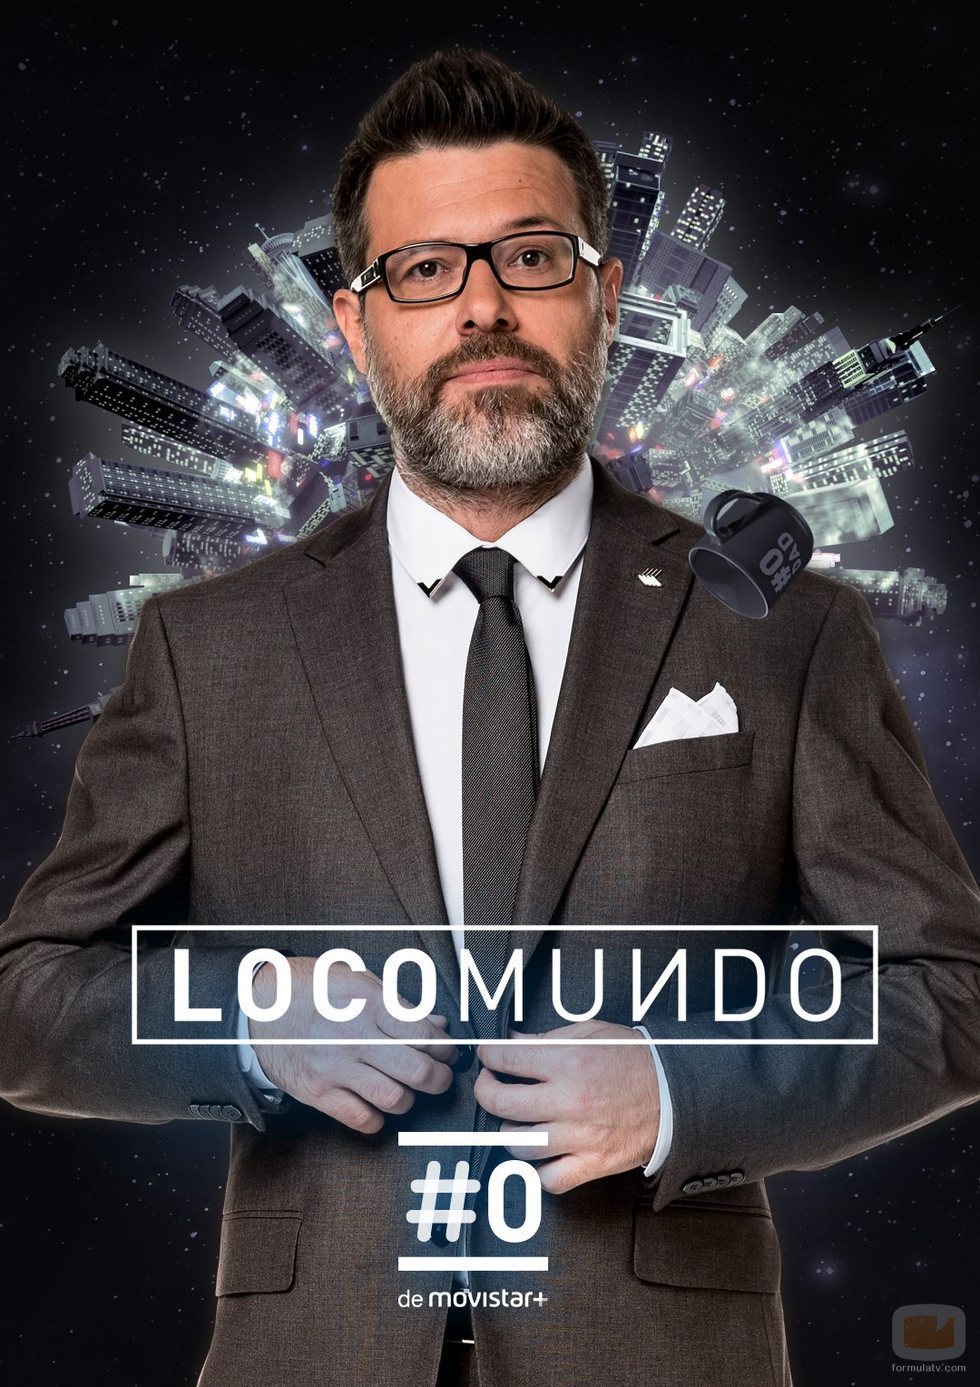 Cartel principal de la nueva temporada de 'LocoMundo' con Quequé al frente